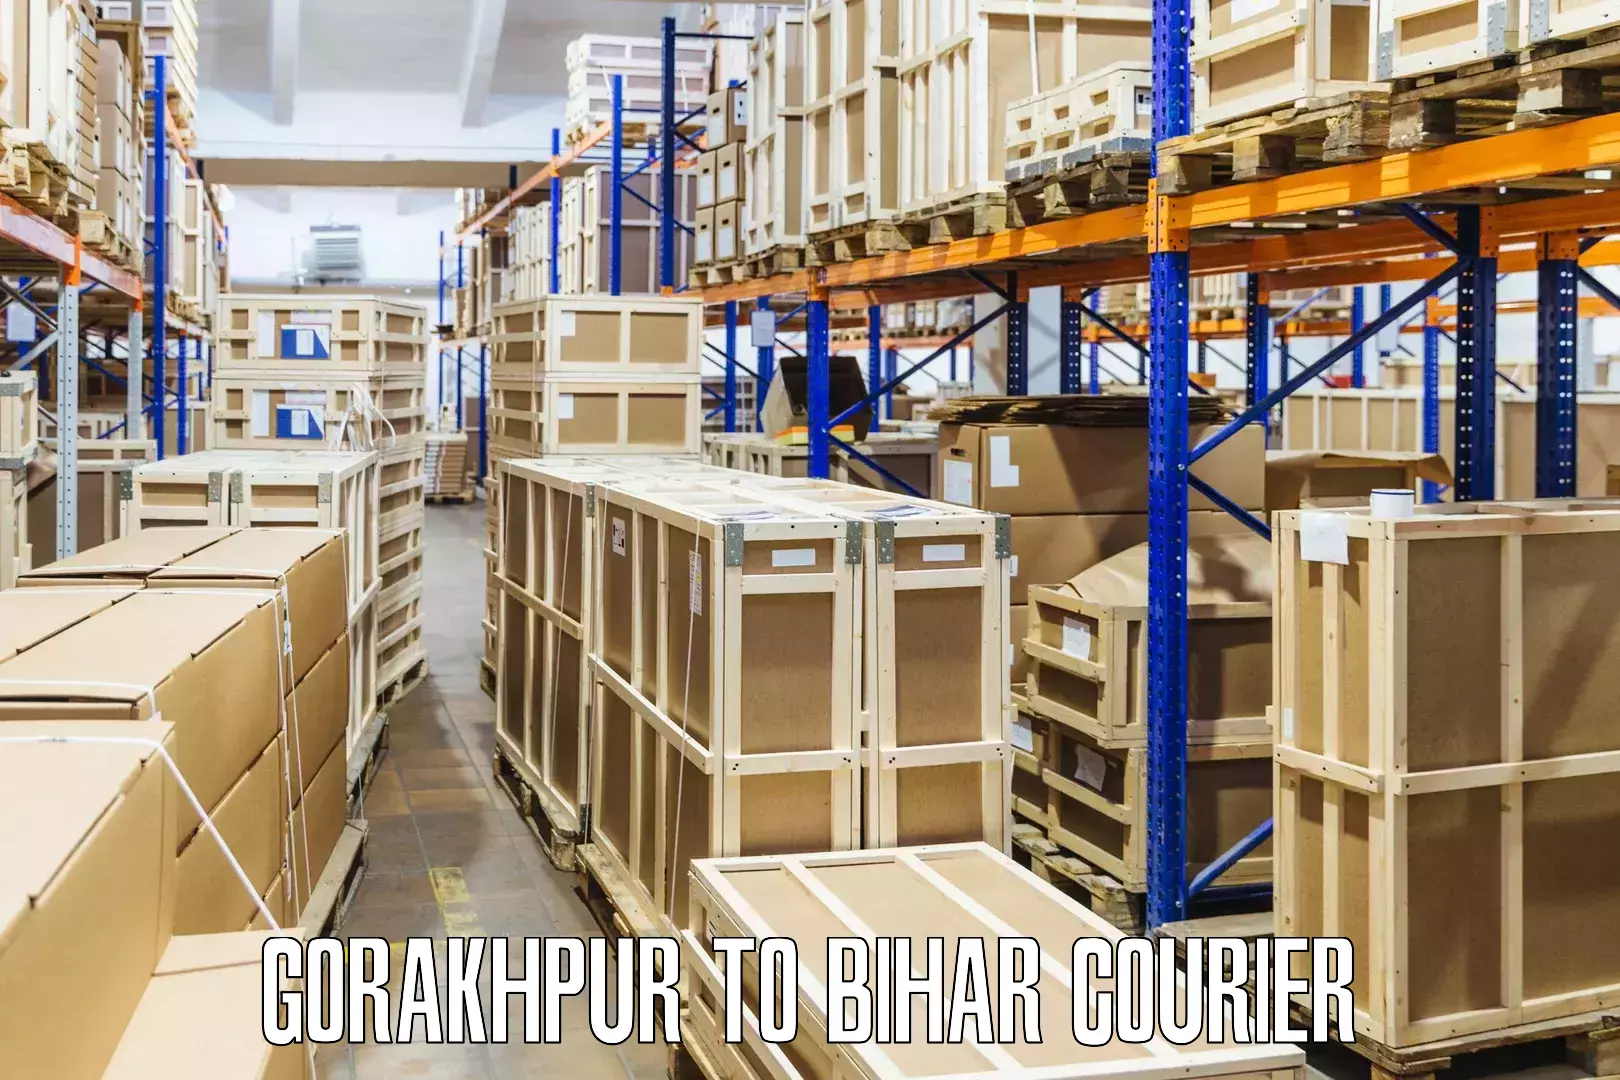 Multi-city courier Gorakhpur to Bhagalpur